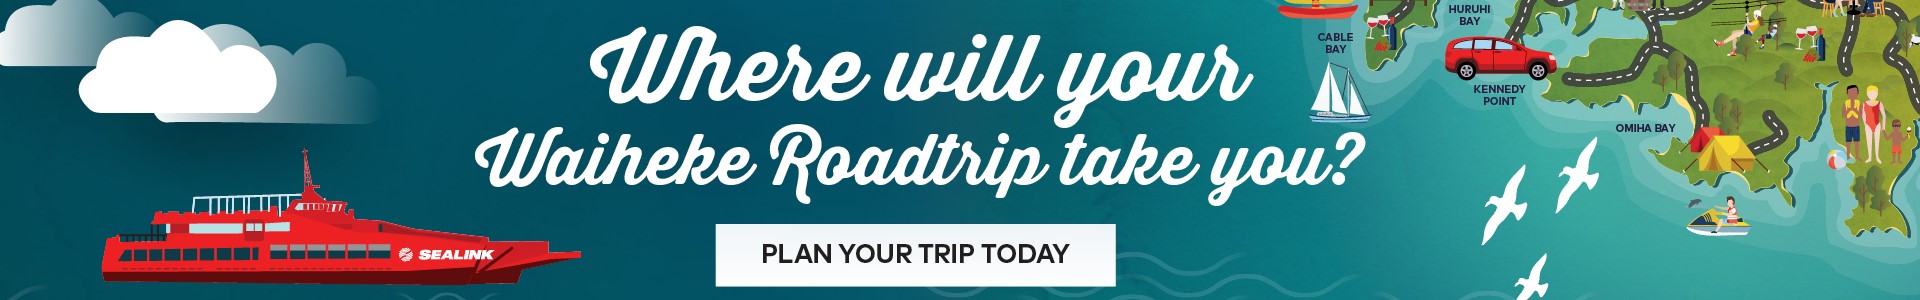 Roadtrips banner - Your Waiheke Road trip starts here